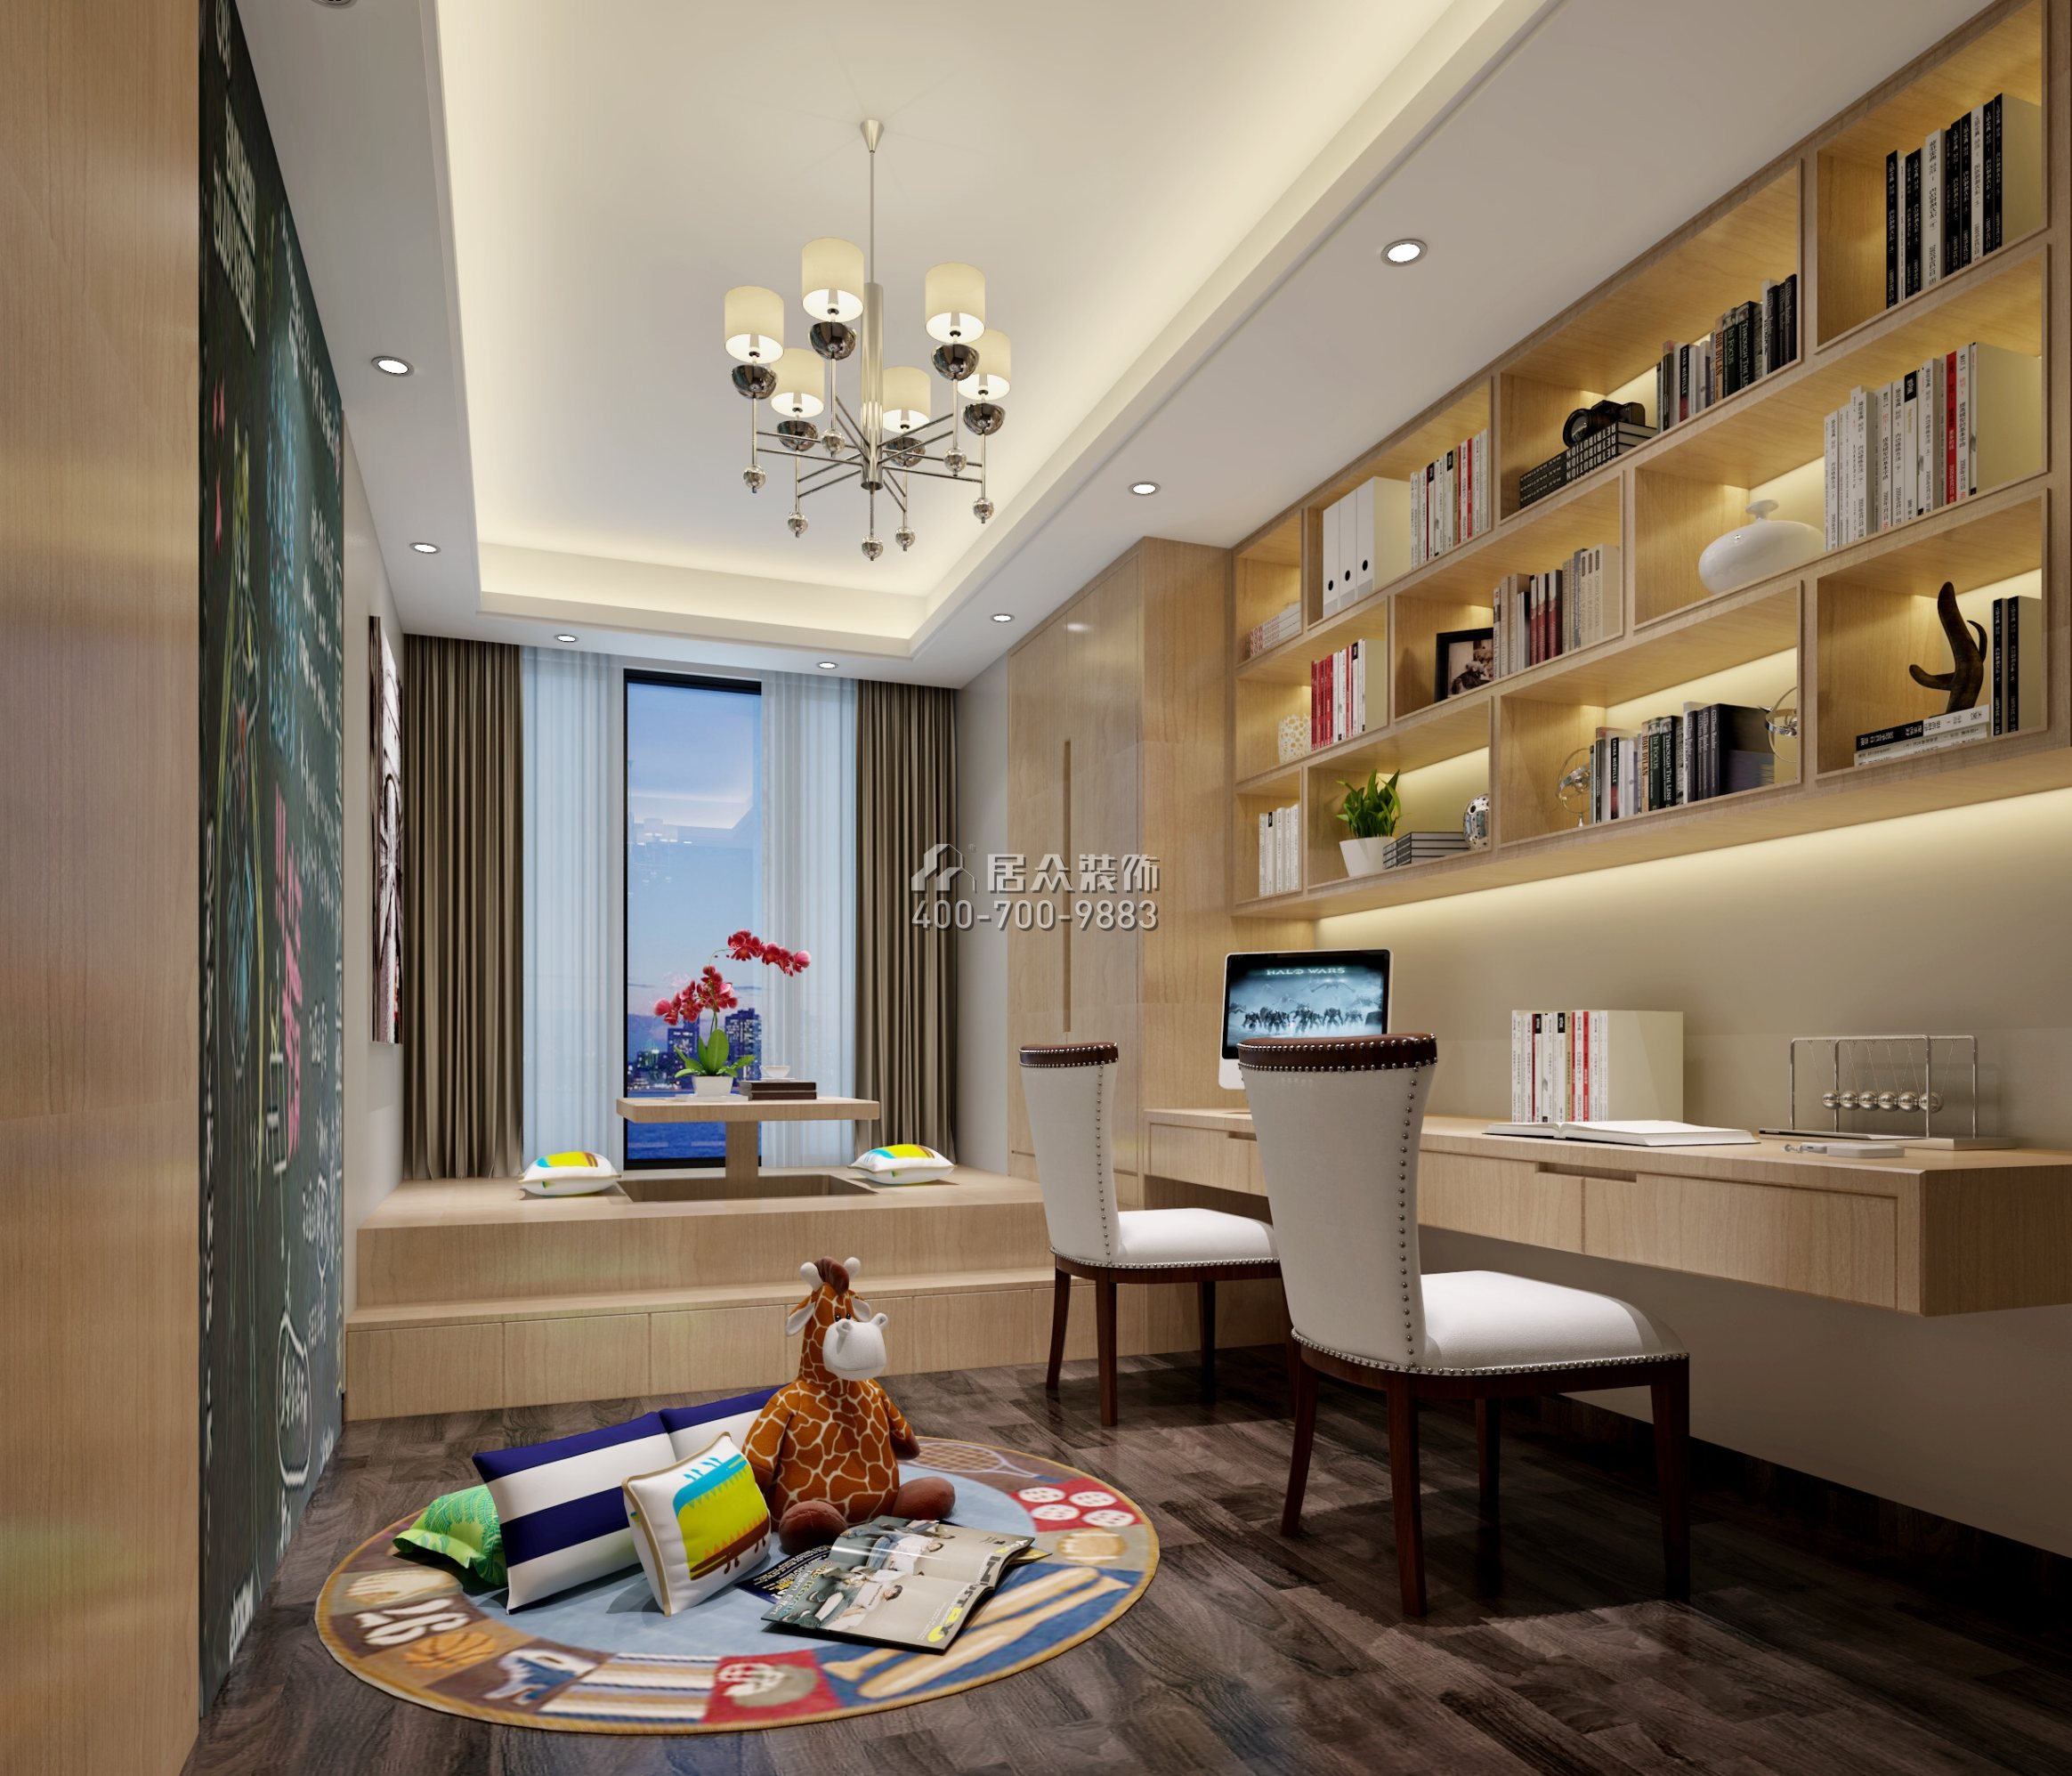 松茂御龍灣雅苑一期170平方米現代簡約風格平層戶型書房裝修效果圖